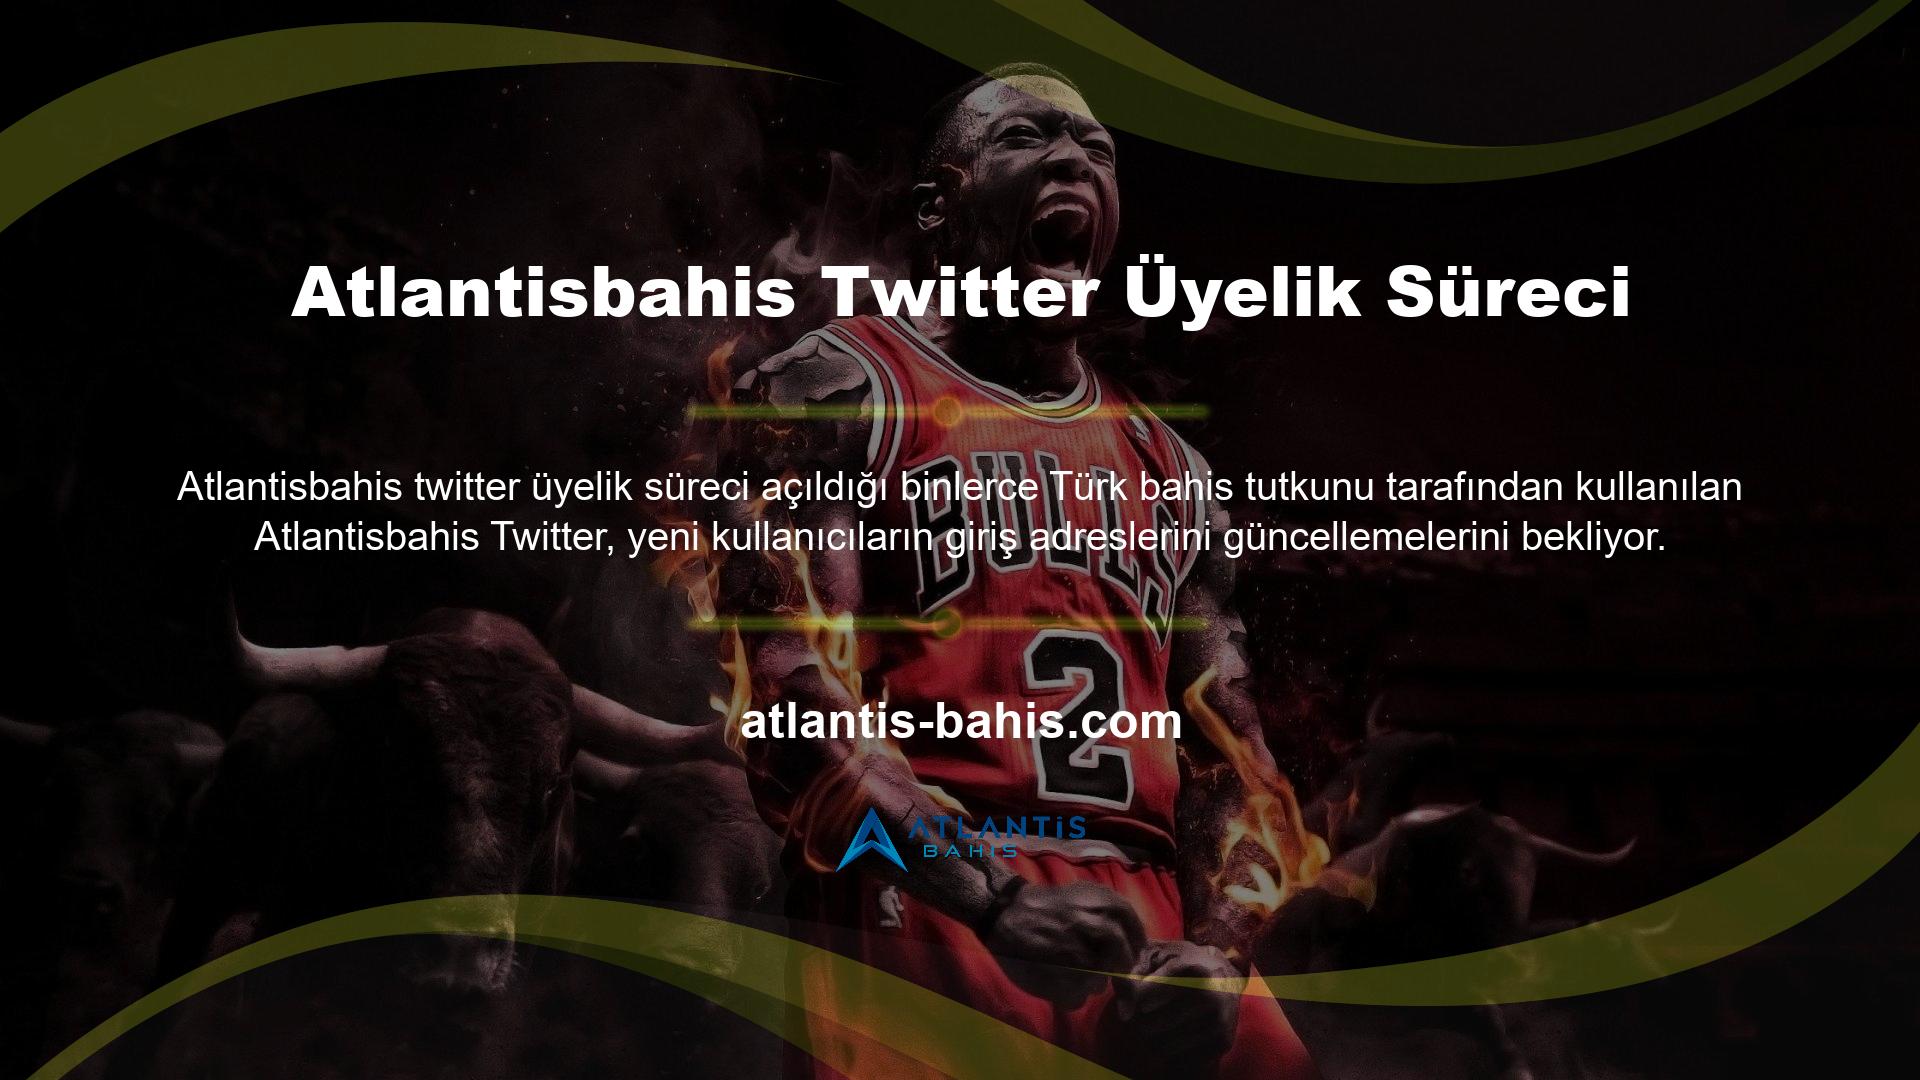 Türkiye'nin önde gelen dijital bahis platformlarından biri olarak kabul edilen Atlantisbahis Twitter'ın son adresine buradan ulaşabilirsiniz